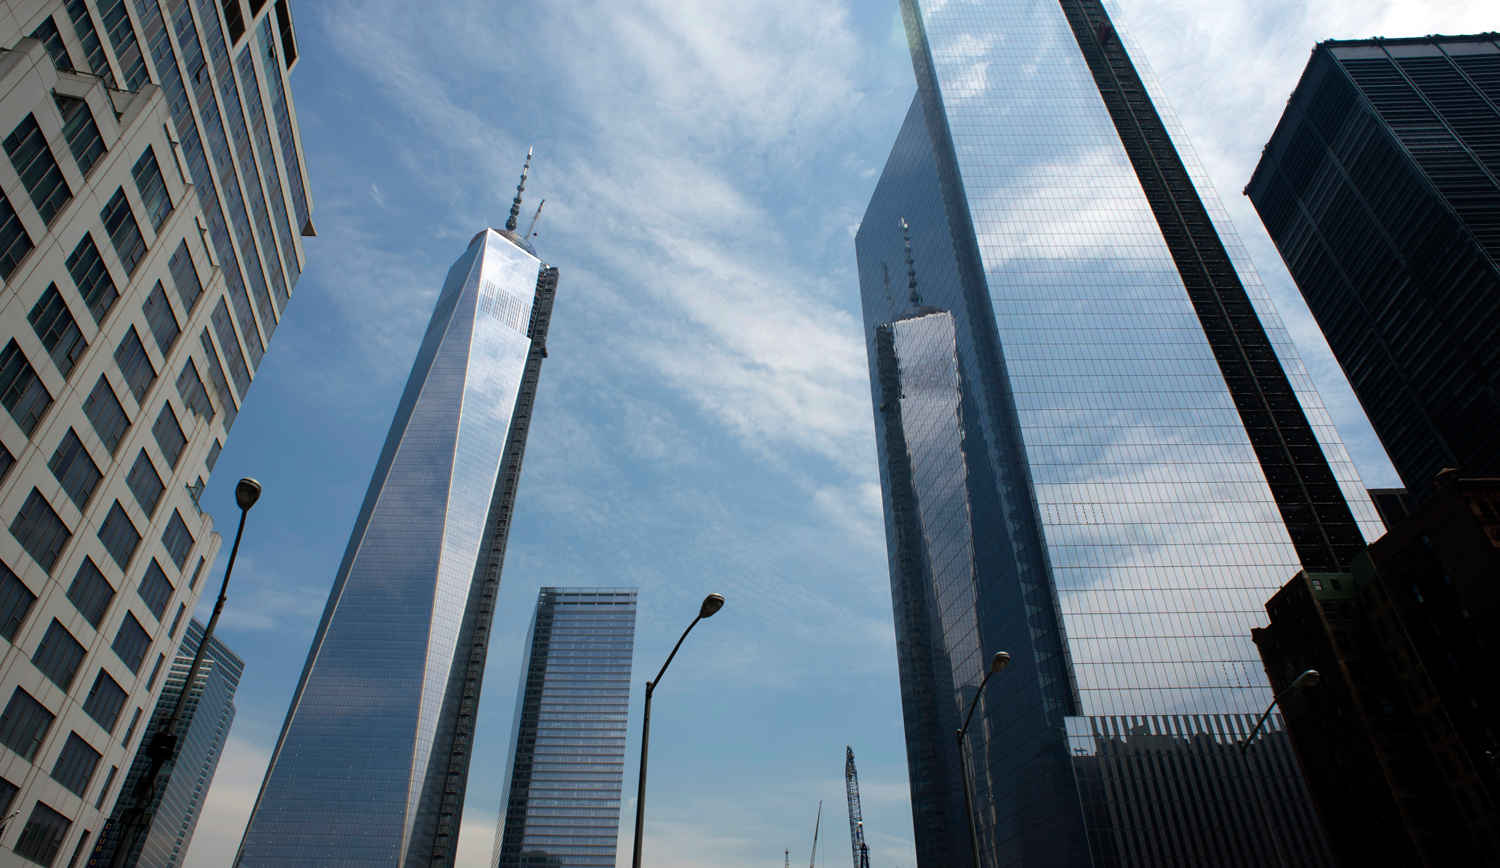 Близнецы сколько этажей. Всемирный торговый центр в Нью-Йорке имеет высоту 1776 футов. Всемирный торговый центр. Крыша башен близнецов. 1 Небоскреб.